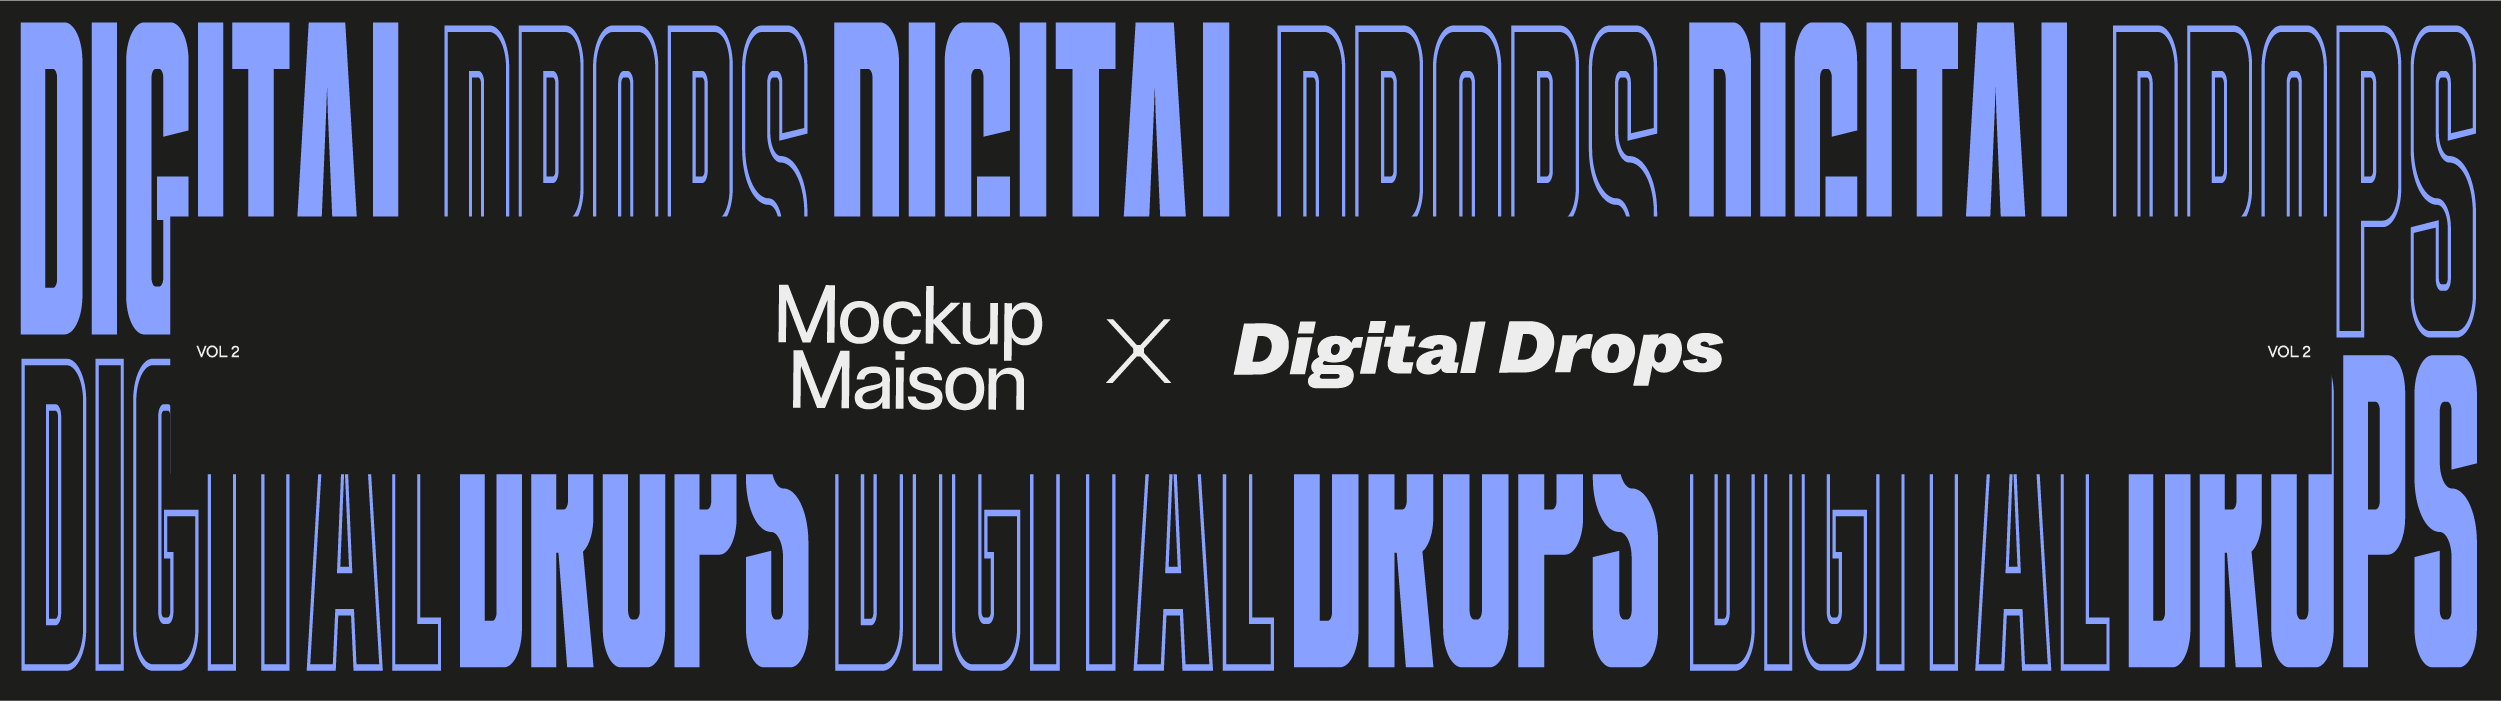 Digital Drops Graphics